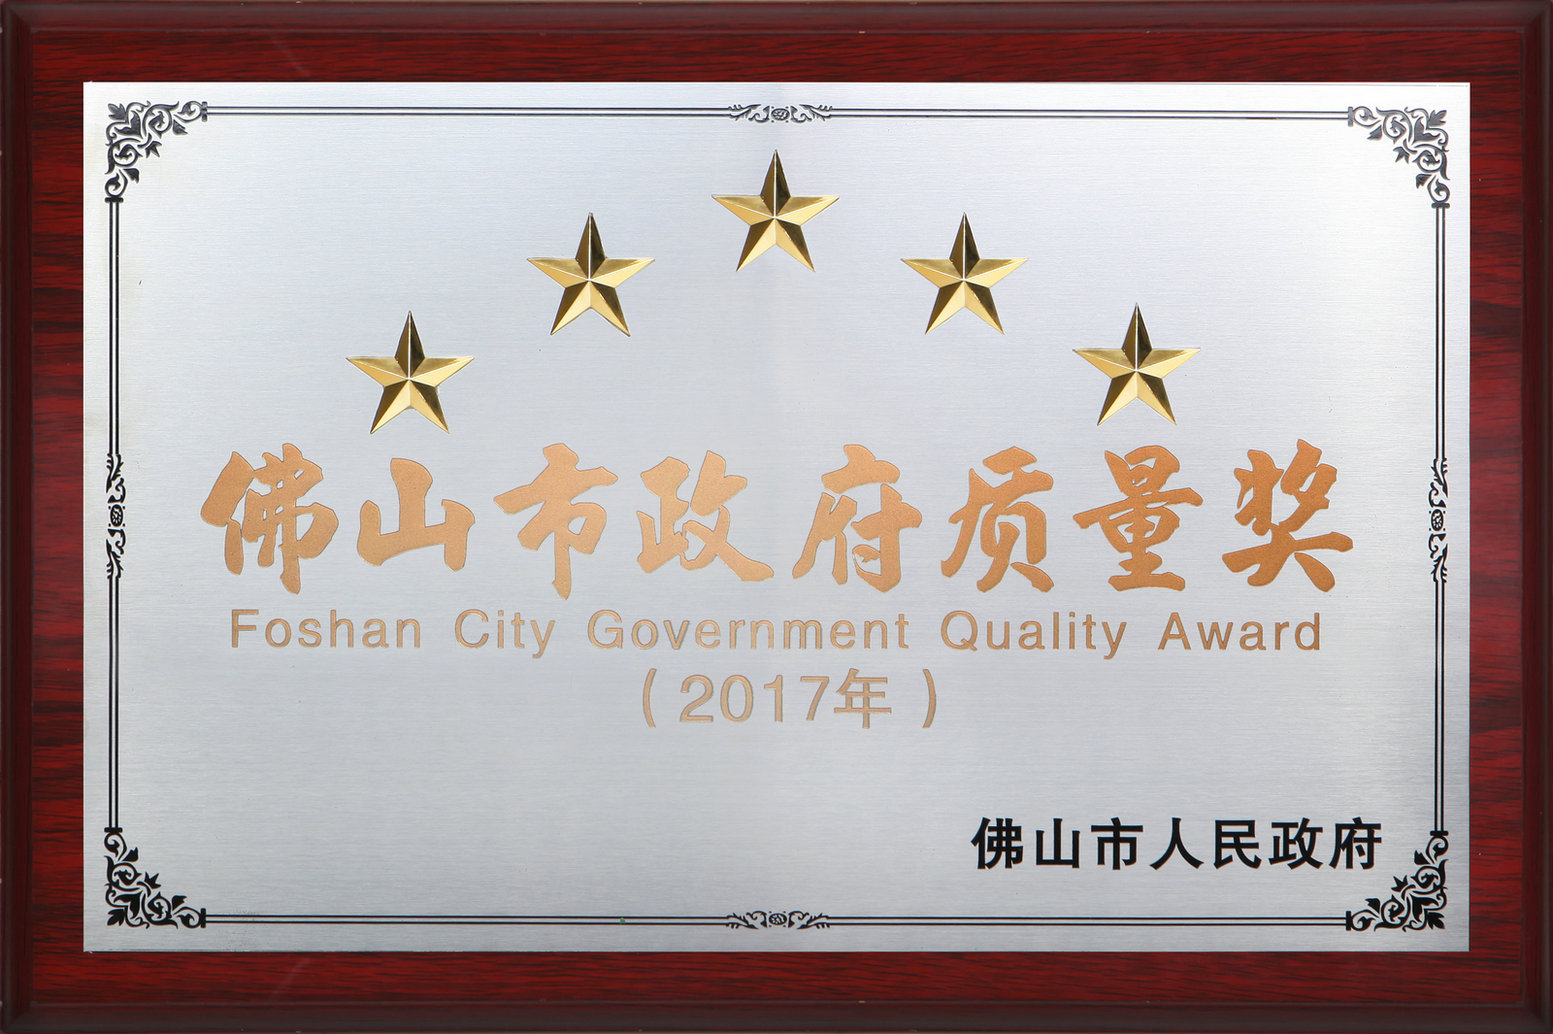 “Foshan City Government Quality Award”